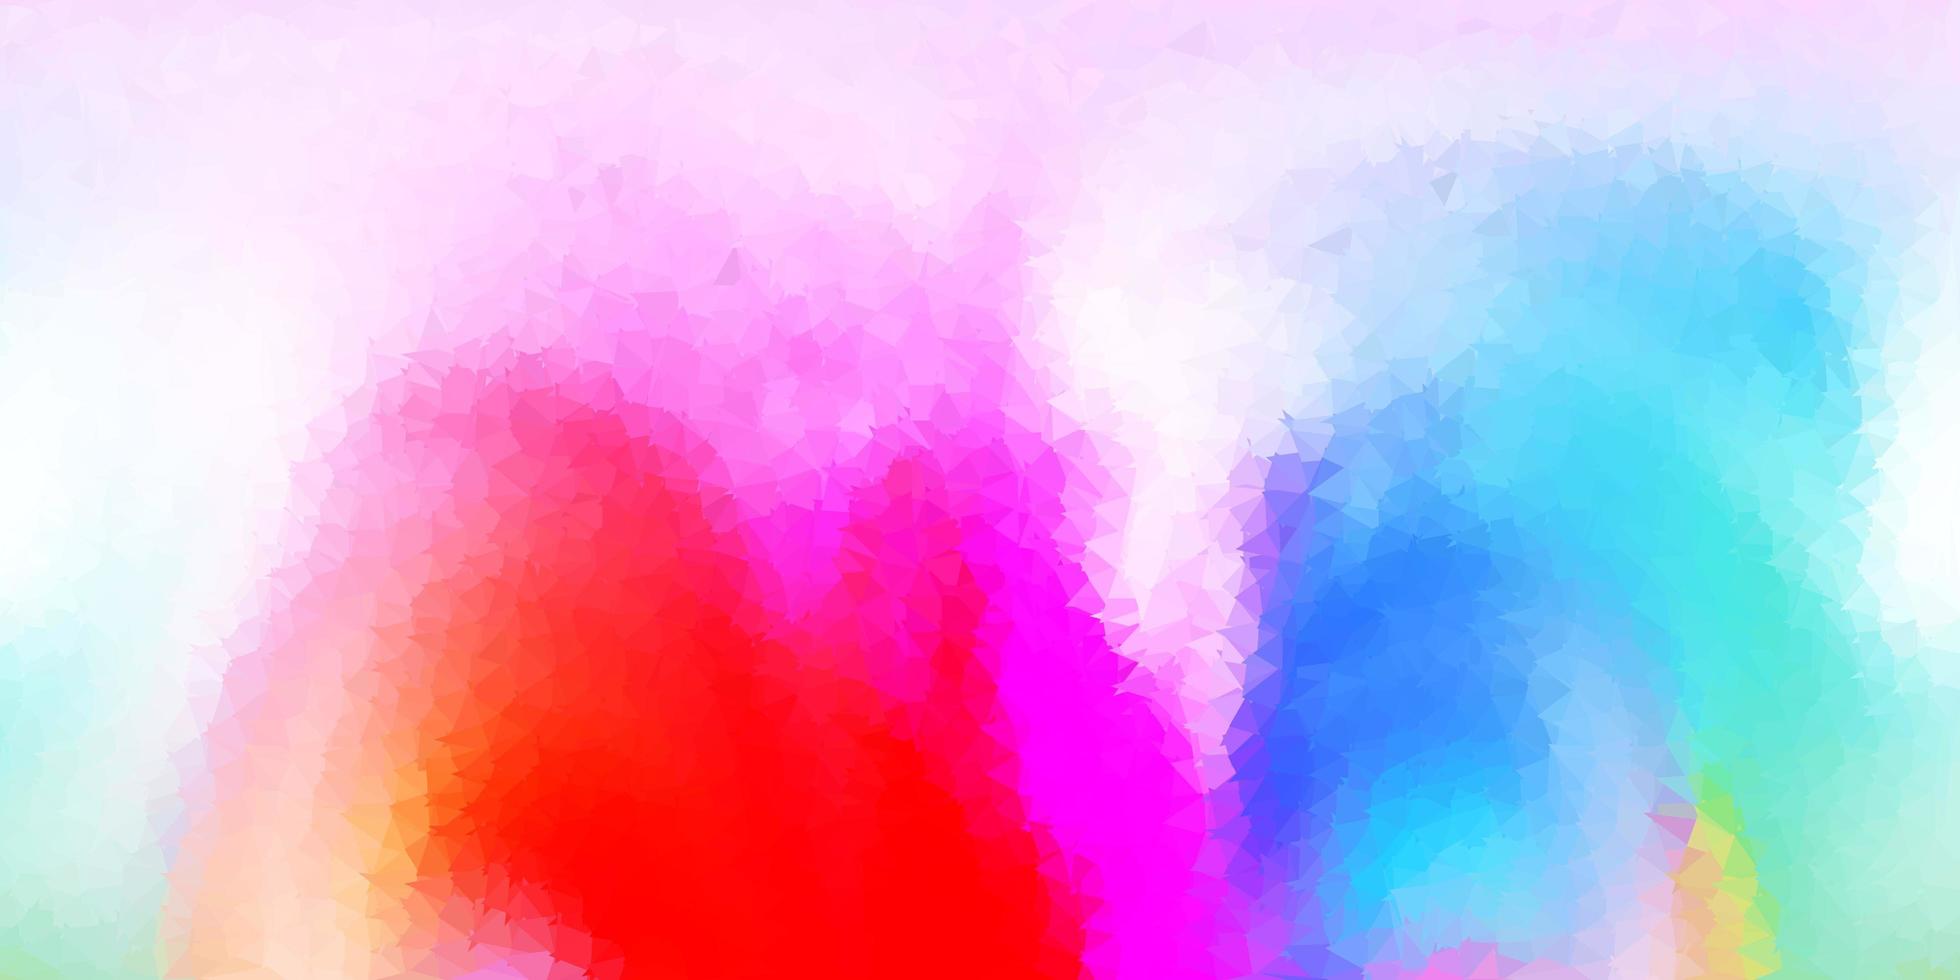 sfondo poligonale vettoriale multicolore chiaro.